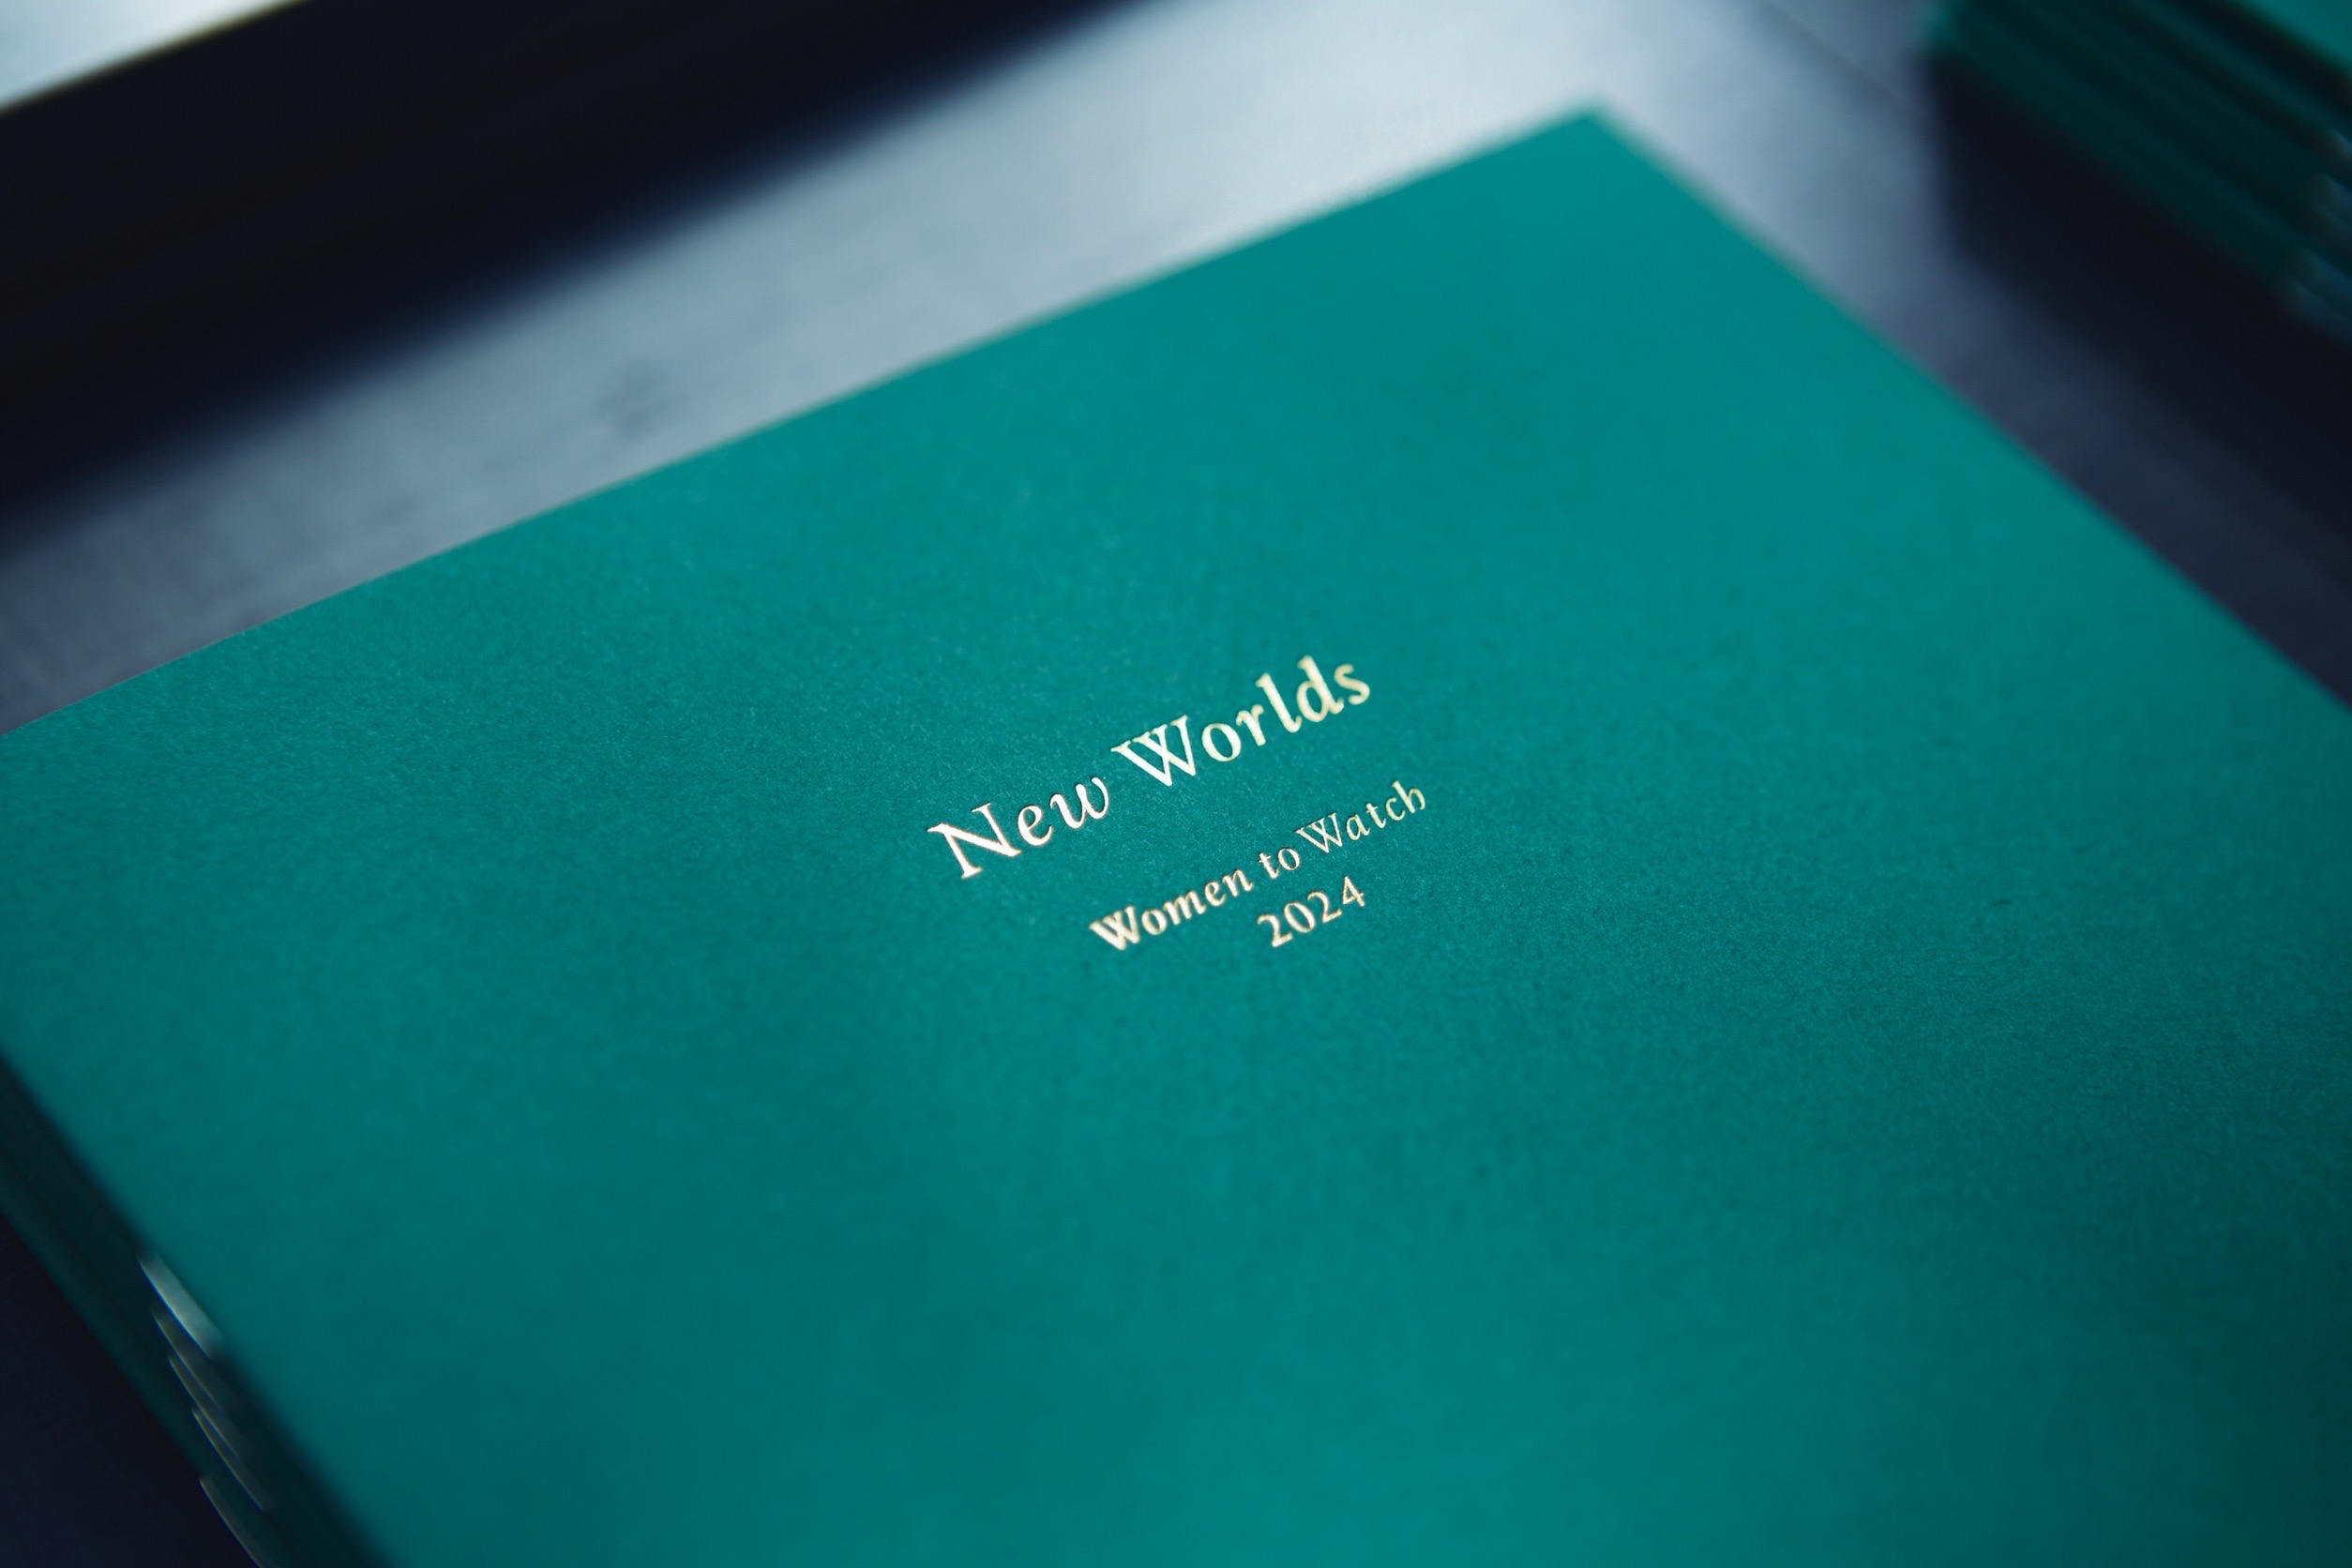 ［展覧会］NMWA日本委員会主催展覧会「New Worlds」